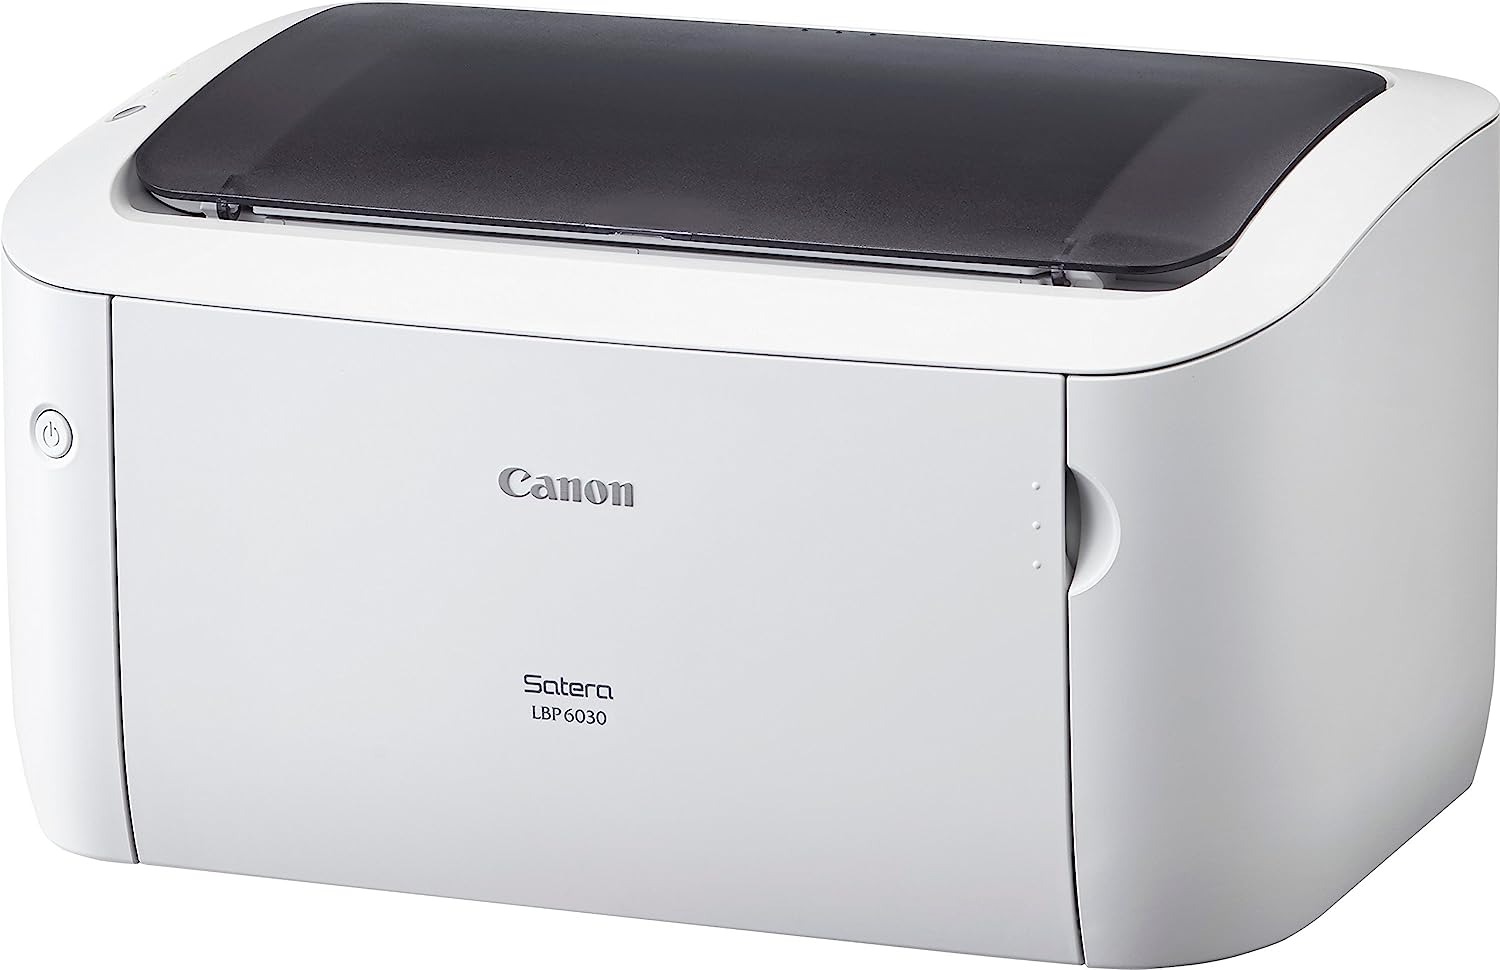 新品 Canon LBP6030 キャノン Satera サテラ レーザープリンター A4対応 パソコン 周辺機器 プリンタ レーザープリンタ 送料無料 4960999996608